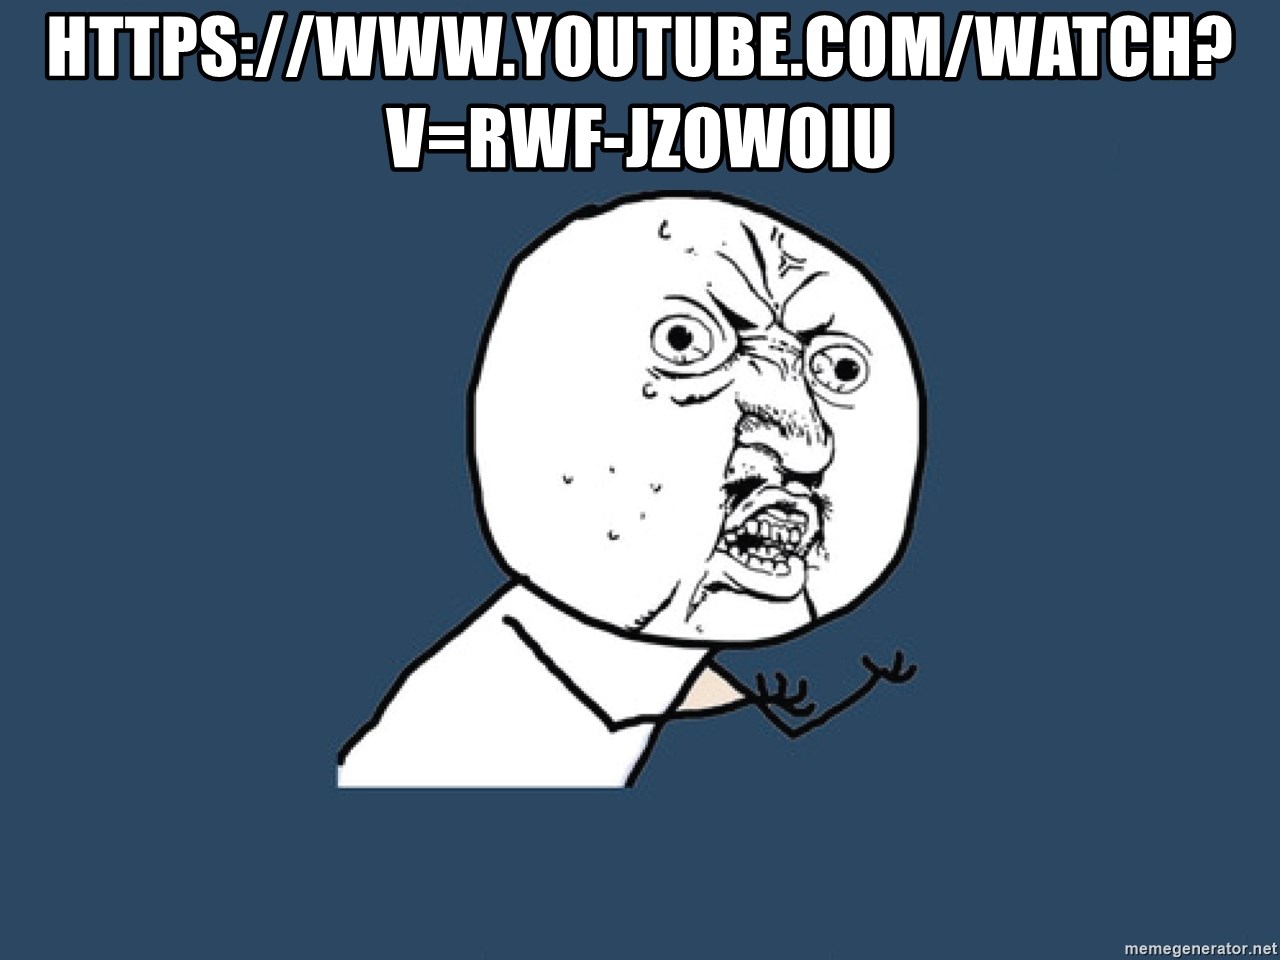 Y U No - https://www.youtube.com/watch?v=rwf-JzOWOIU